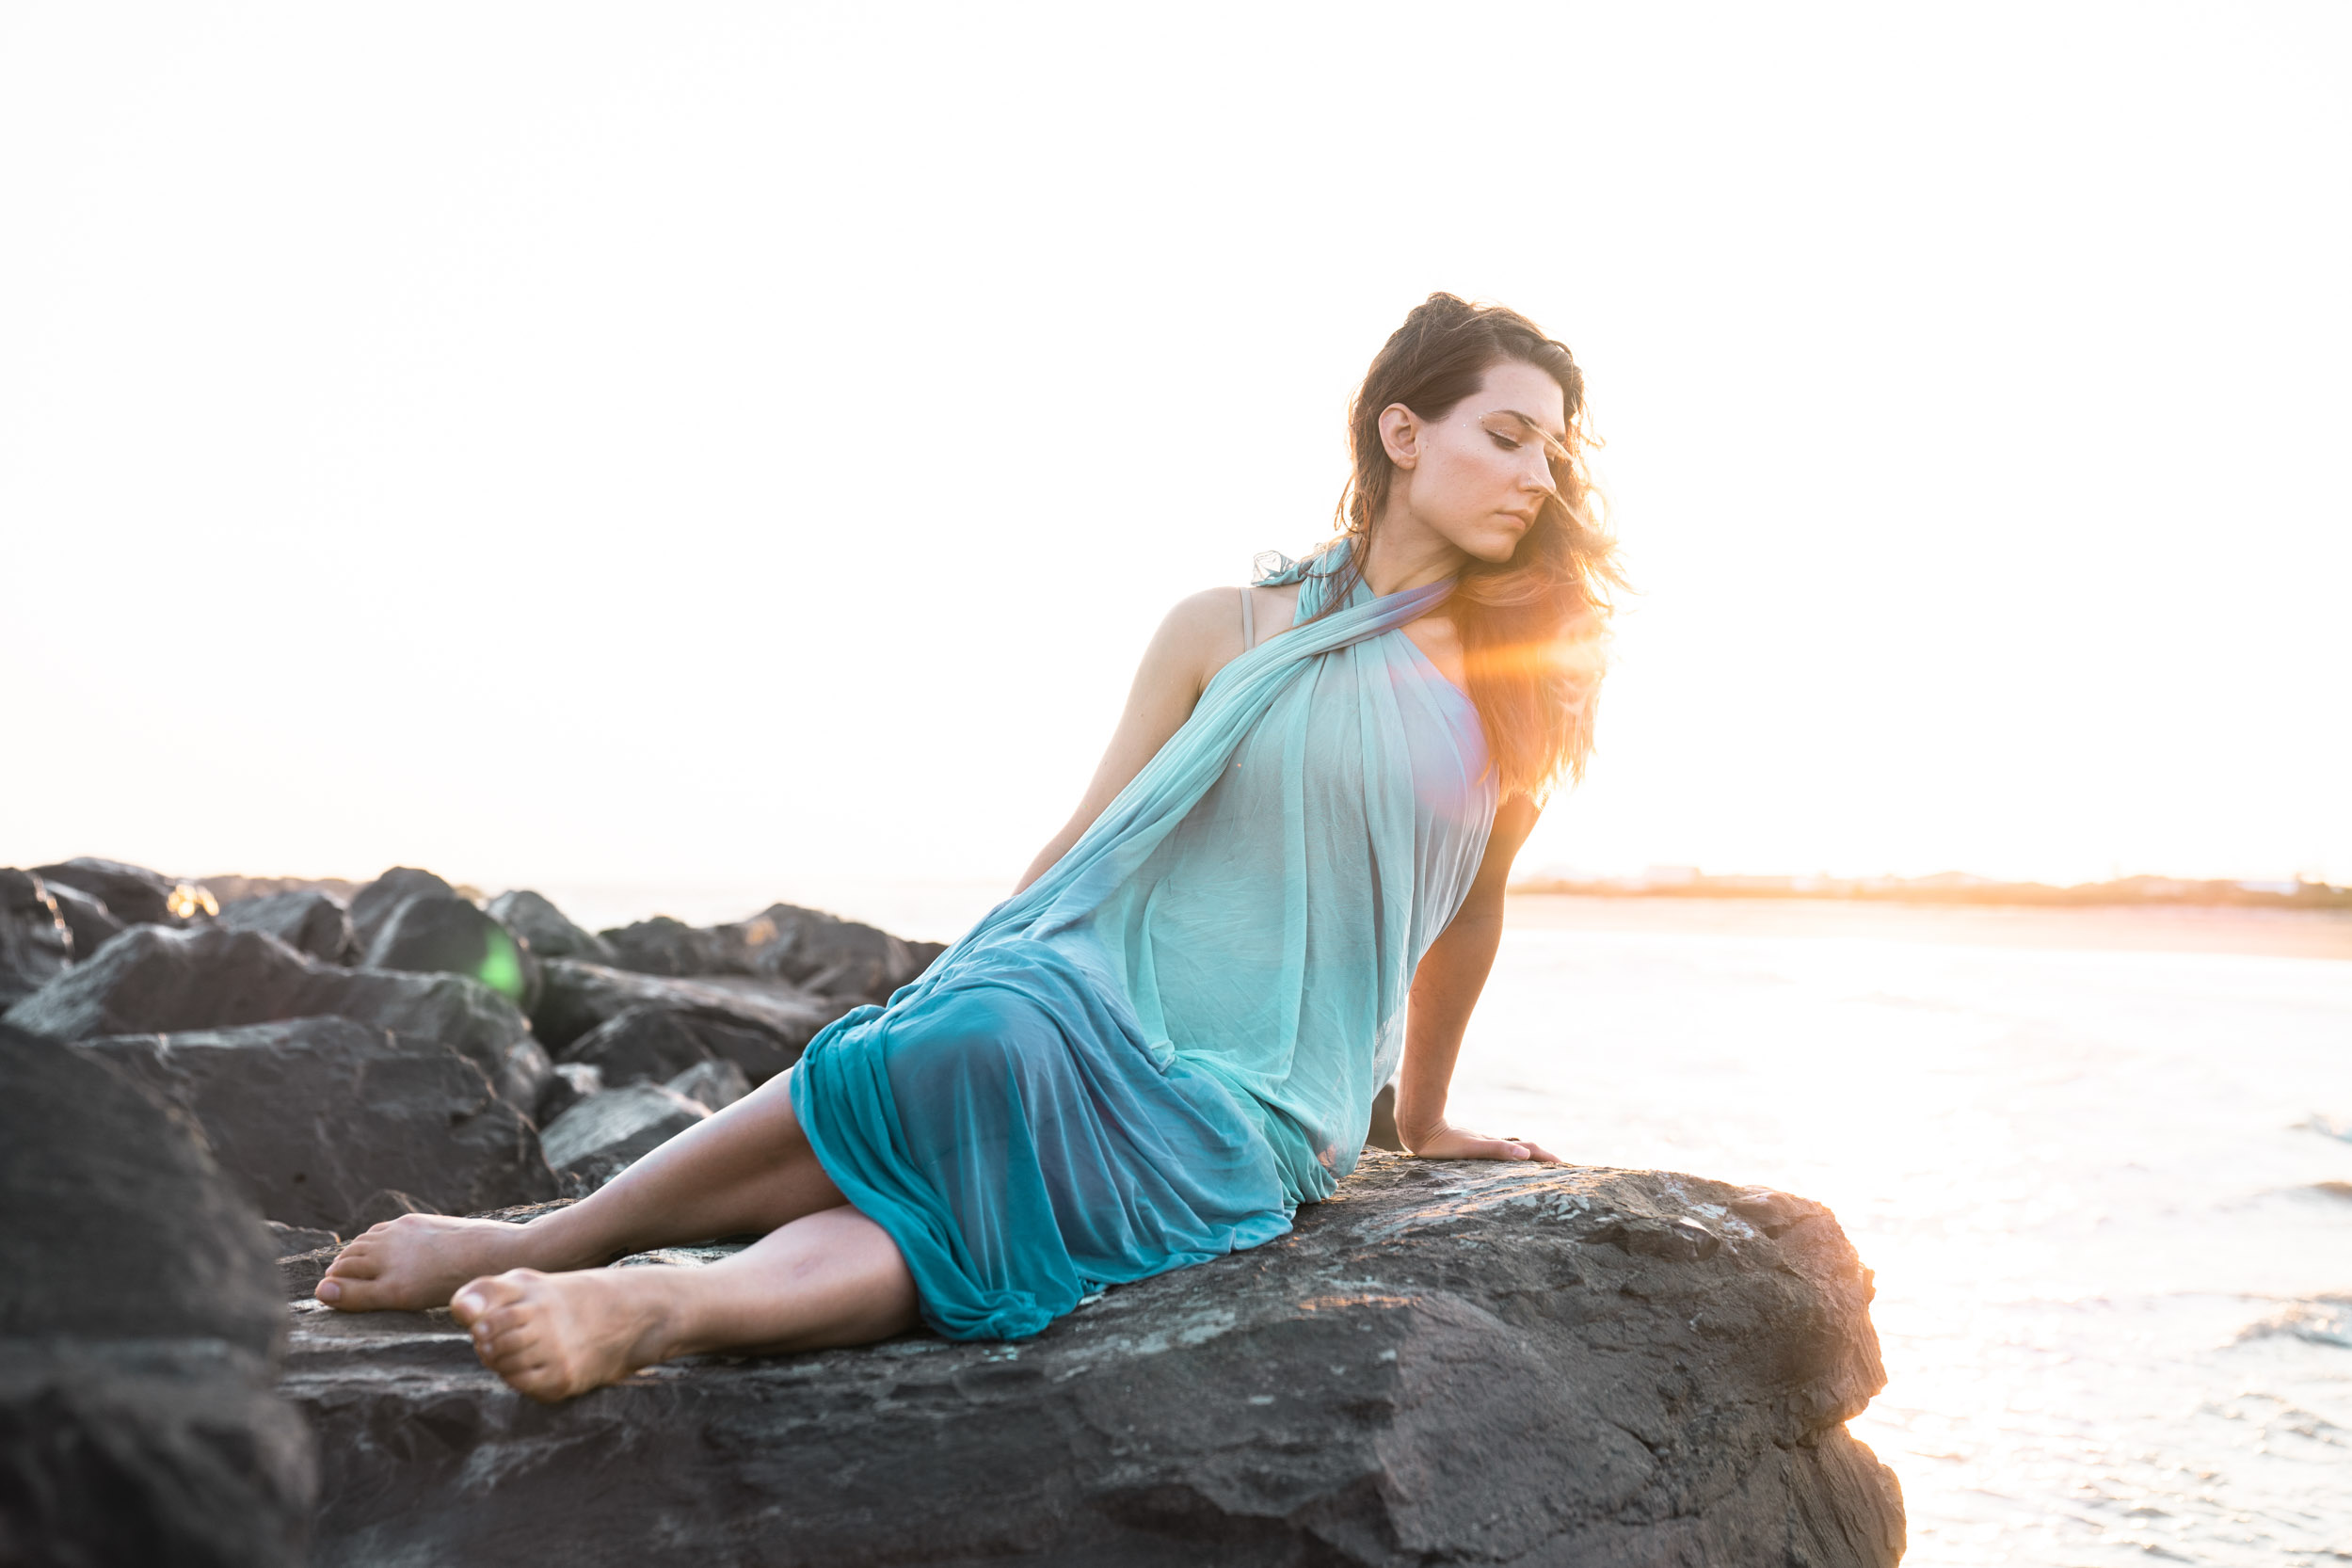 A woman modeling in a beautiful dress on a Louisiana Gulf Coast beach at sunset